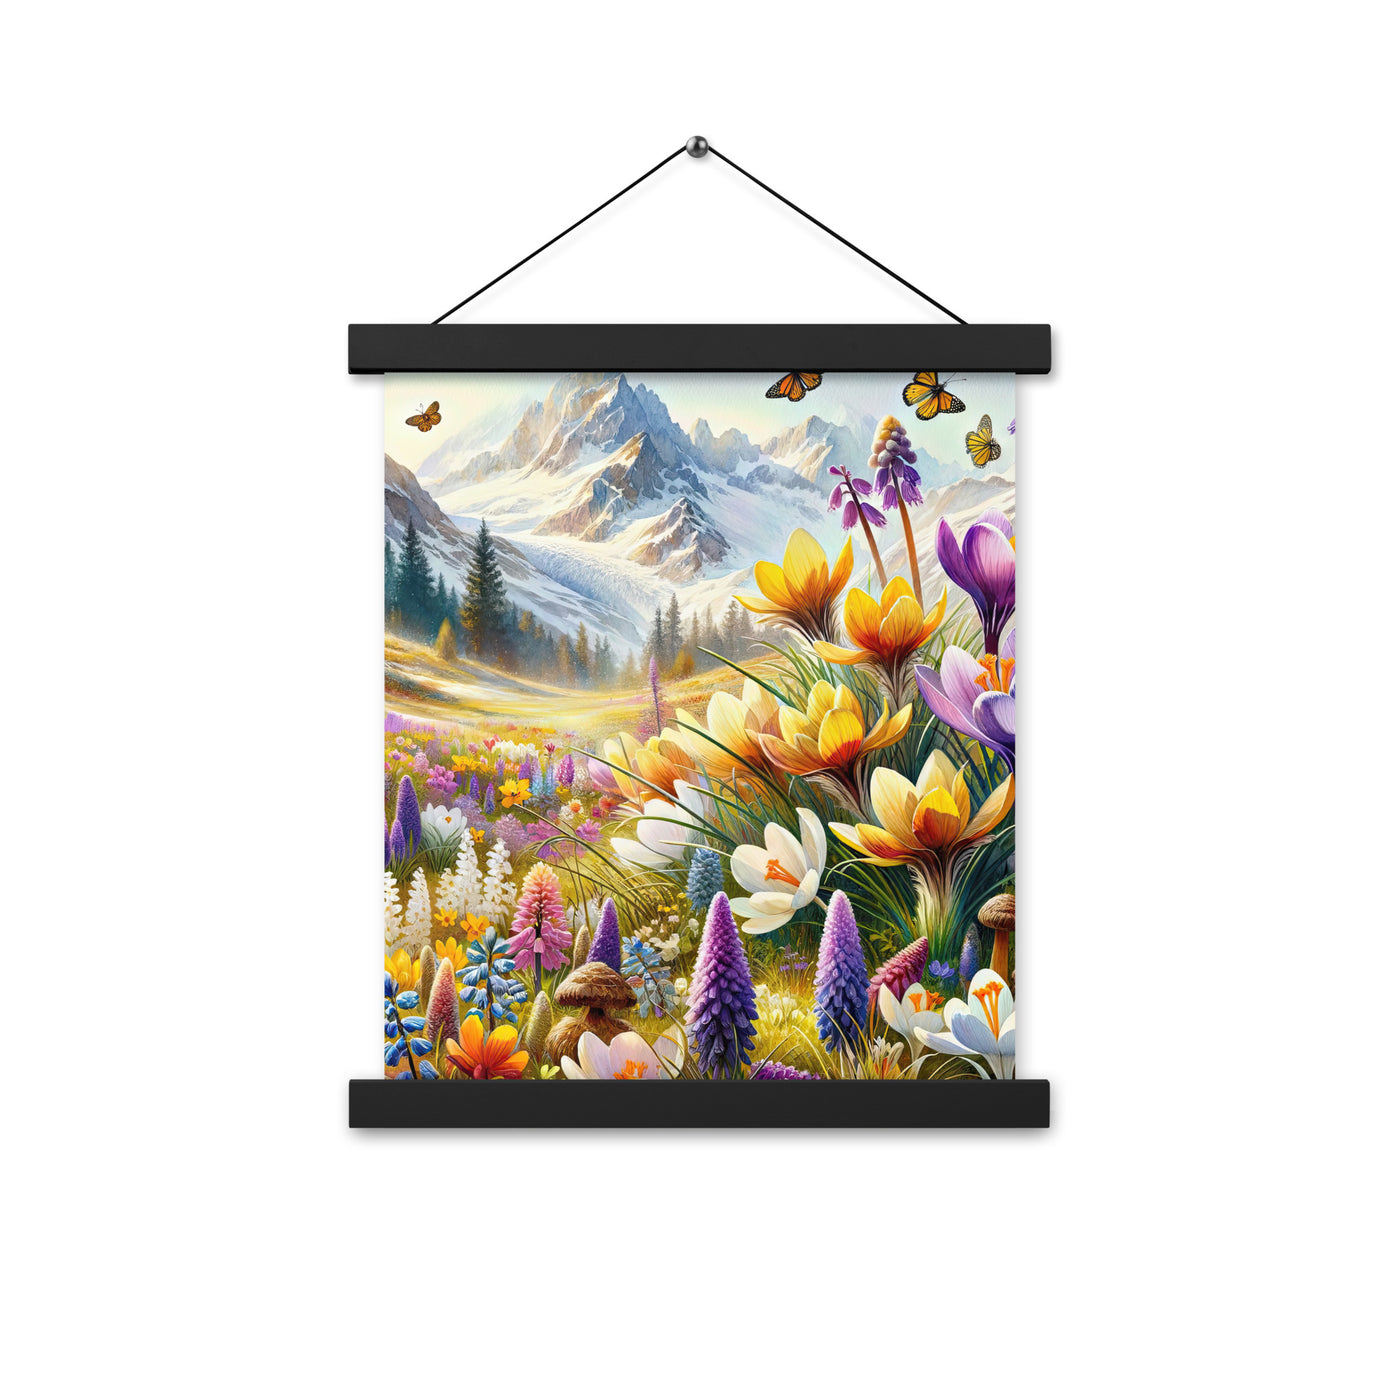 Aquarell einer ruhigen Almwiese, farbenfrohe Bergblumen in den Alpen - Premium Poster mit Aufhängung berge xxx yyy zzz 27.9 x 35.6 cm